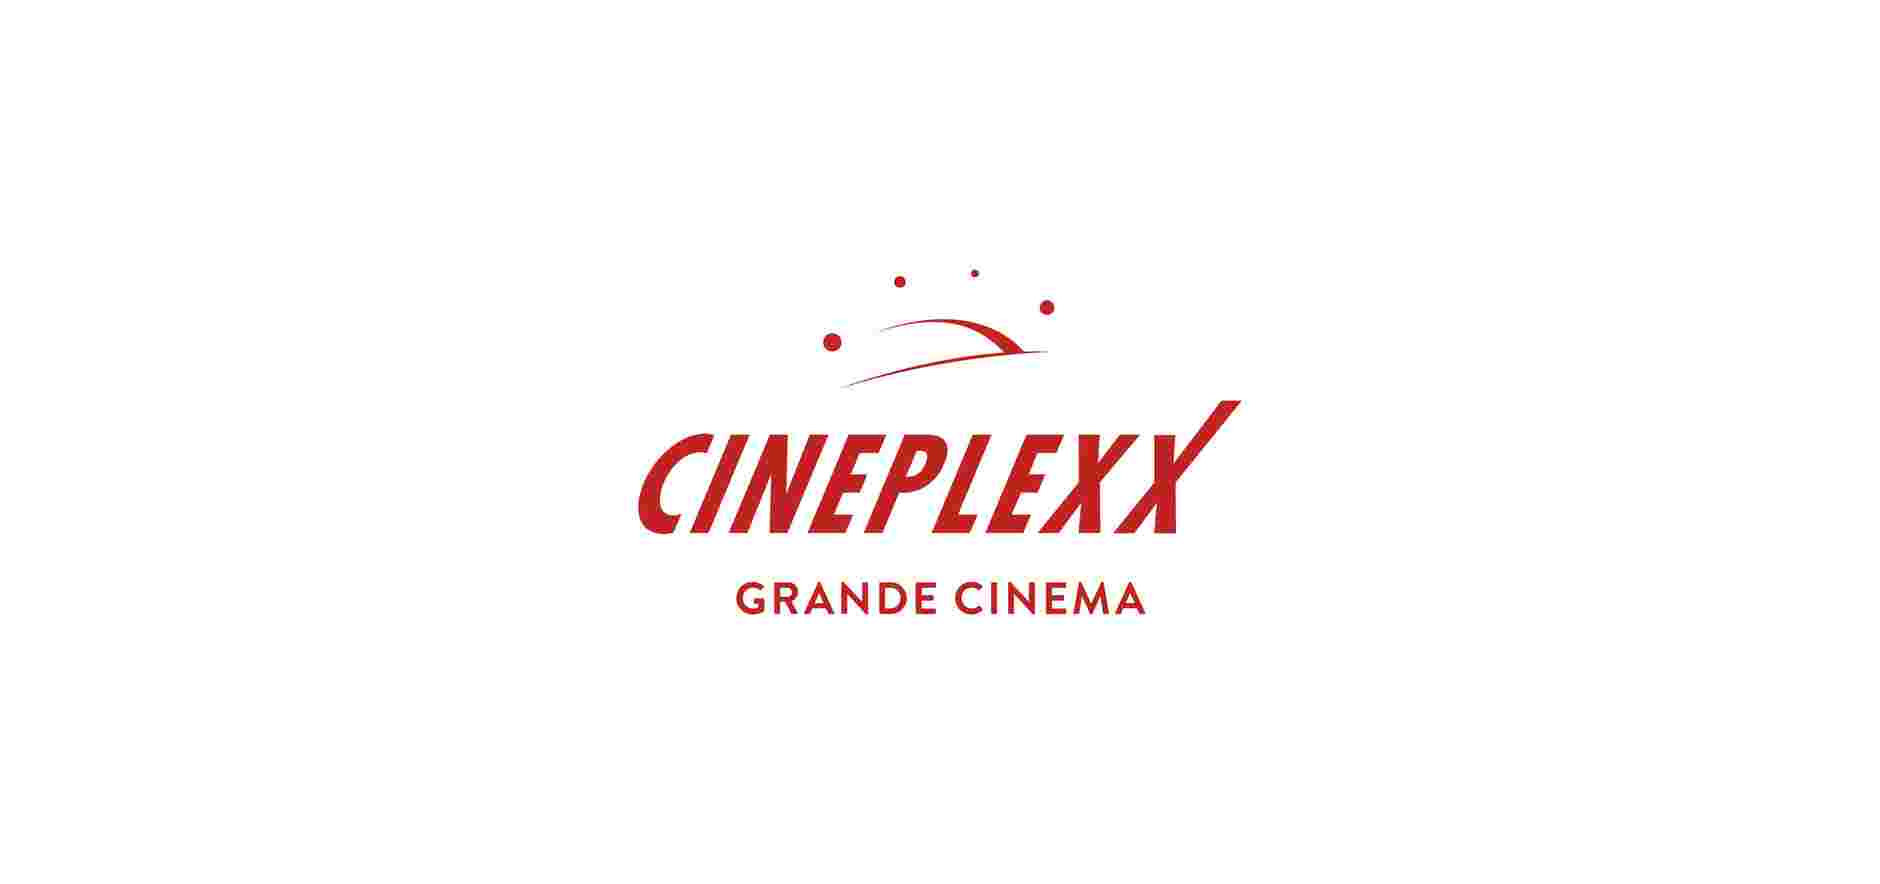 ALGO – Cineplexx Cinema